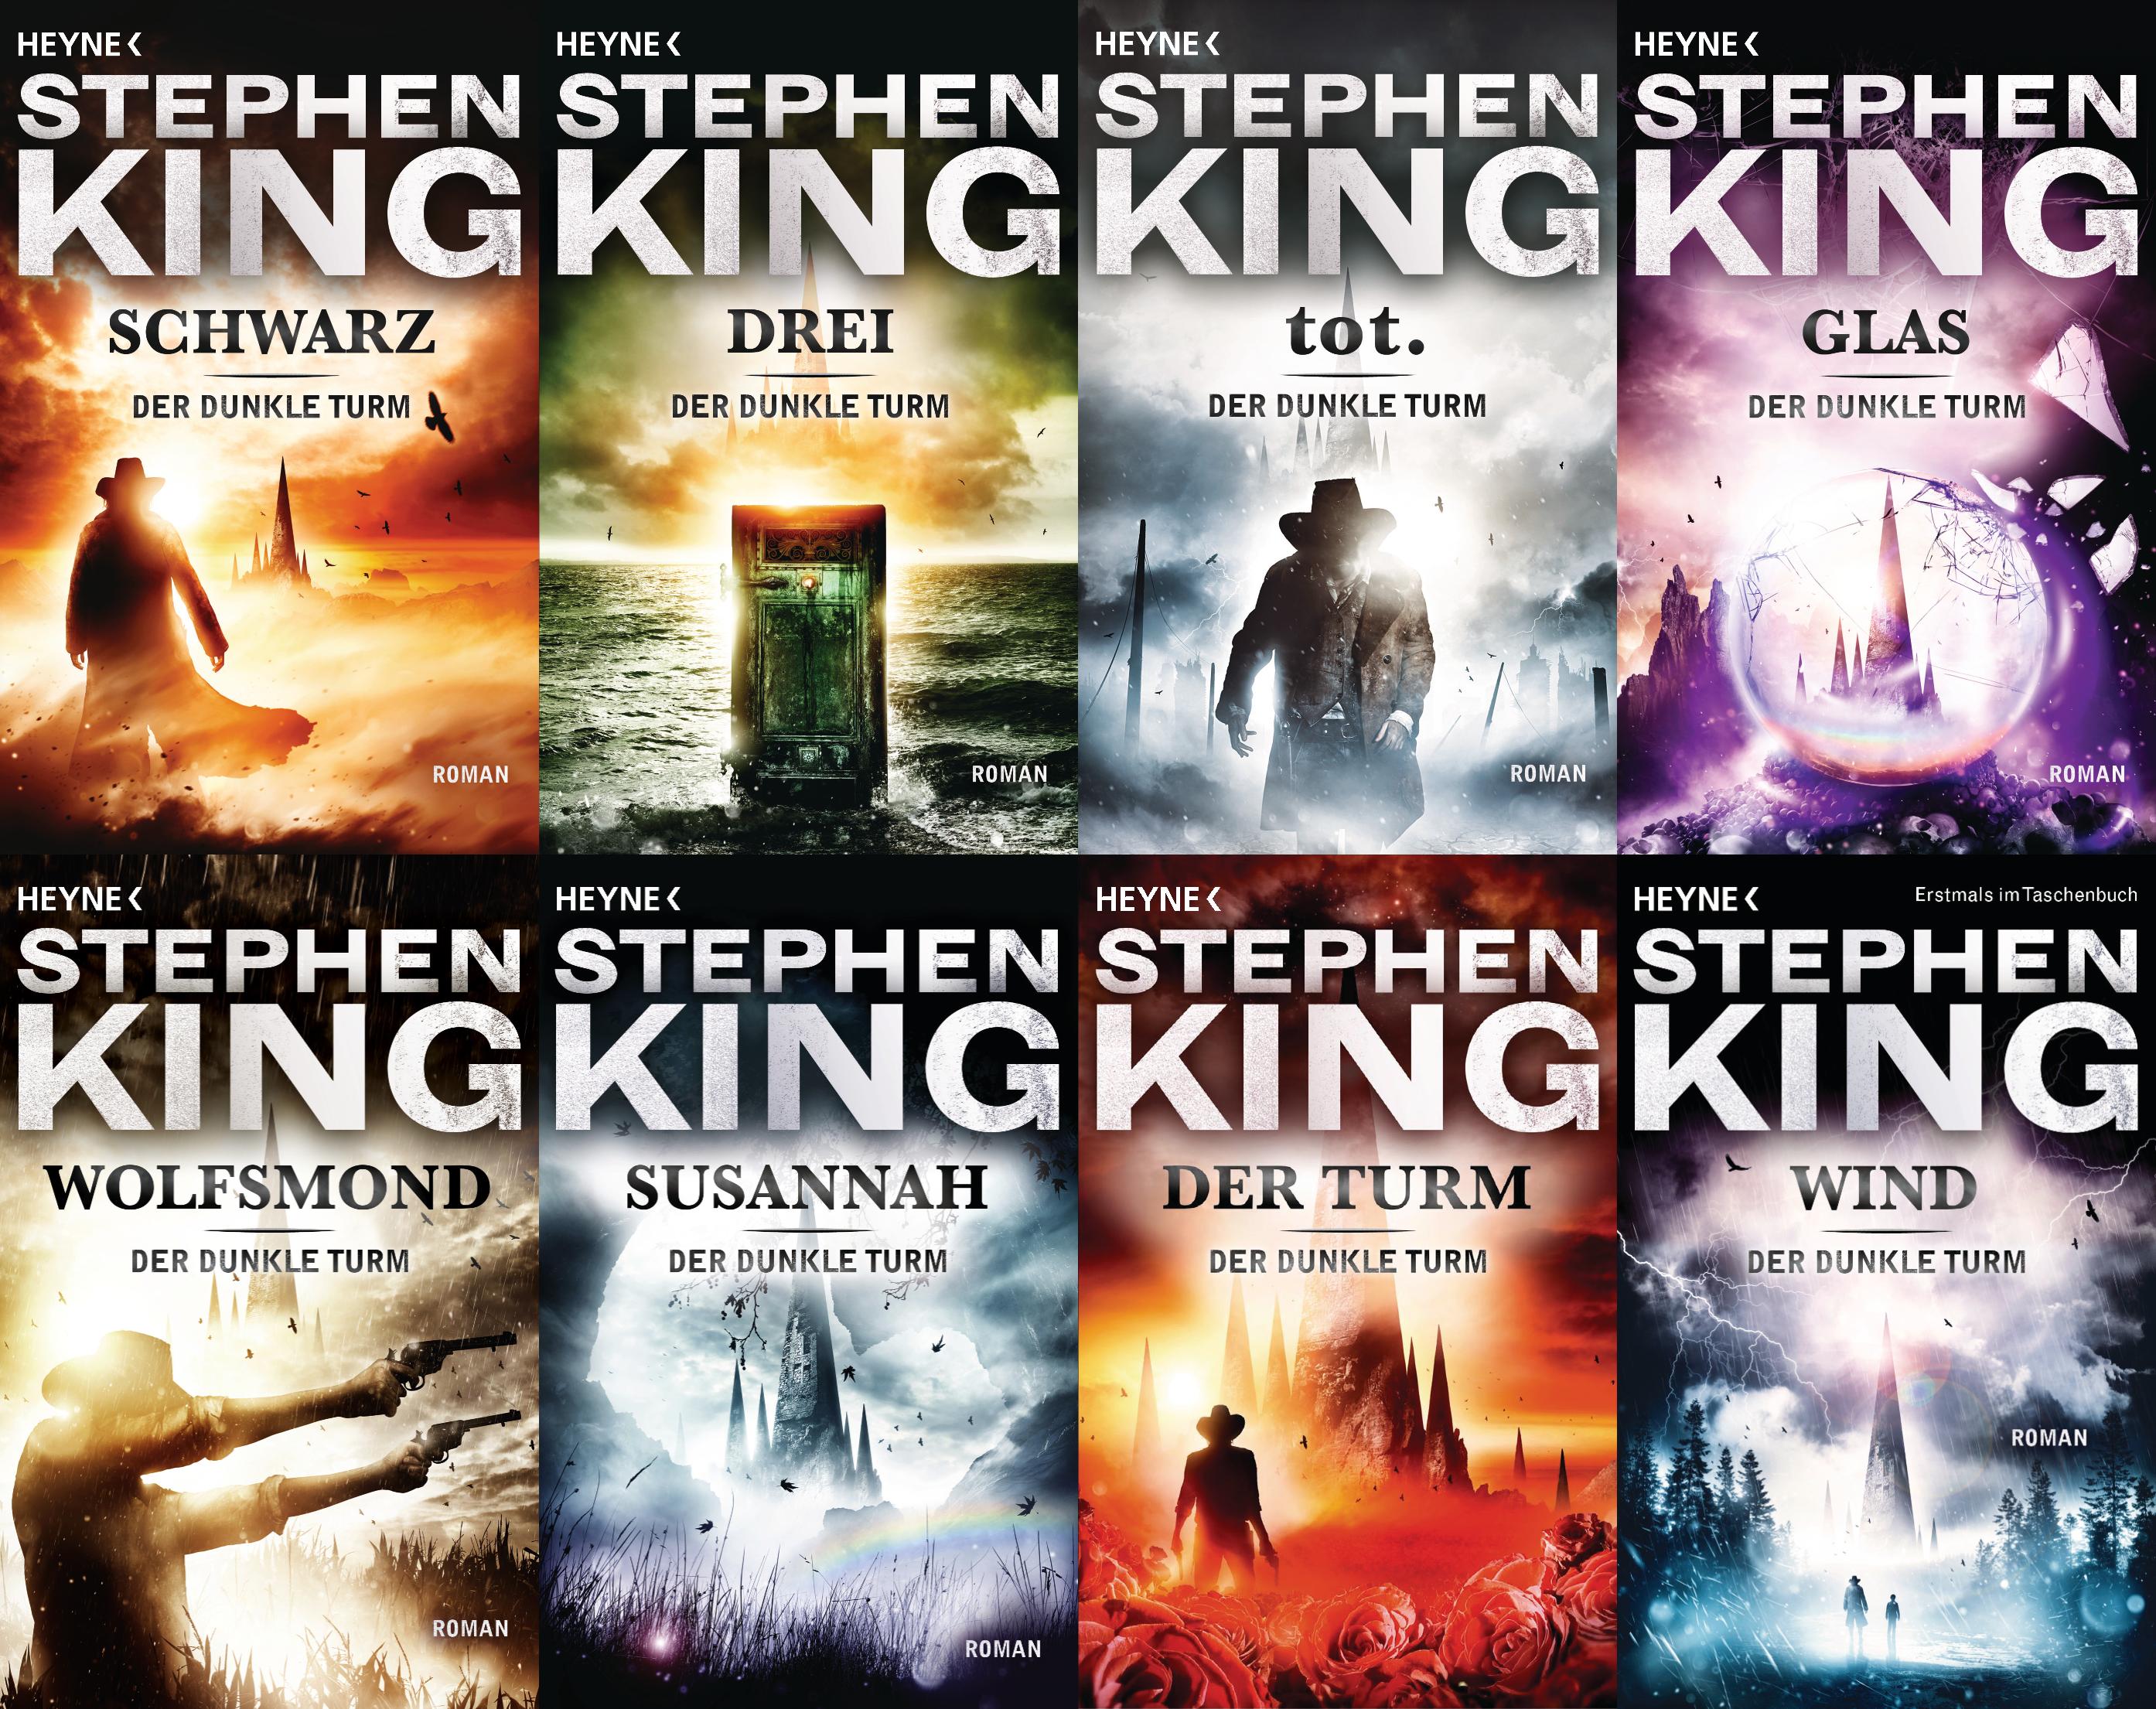 Der dunkle Turm. Stephen King. Der Horror-Klassiker, alle 8 Bände im Set! - Bild 1 von 1